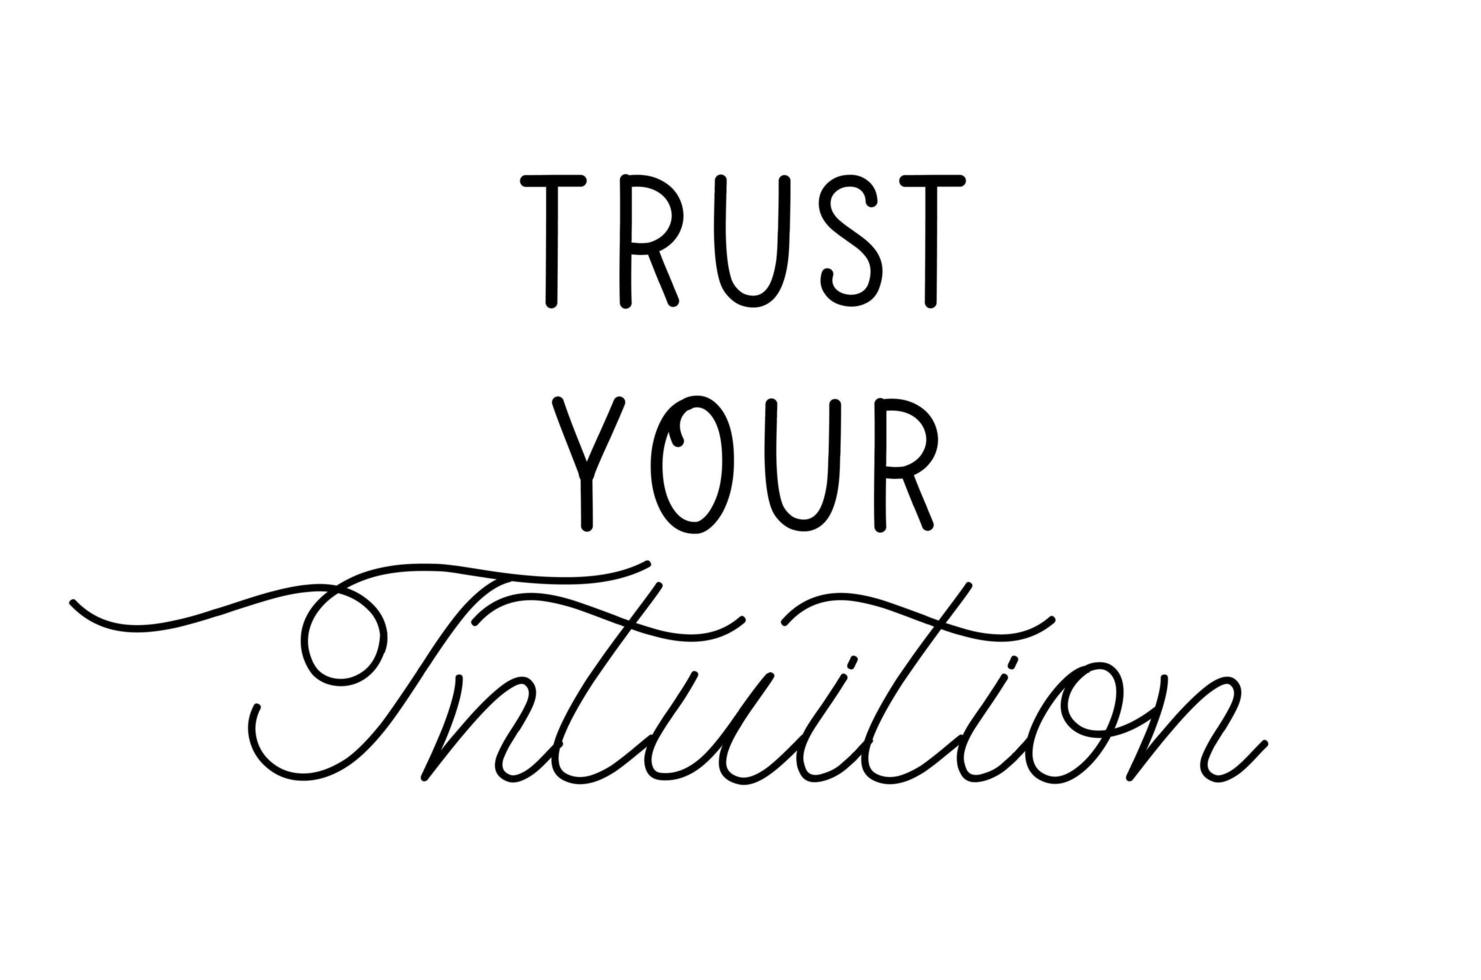 Vertrauen Sie Ihrer Intuition - Handbeschriftungsplakat. vektor